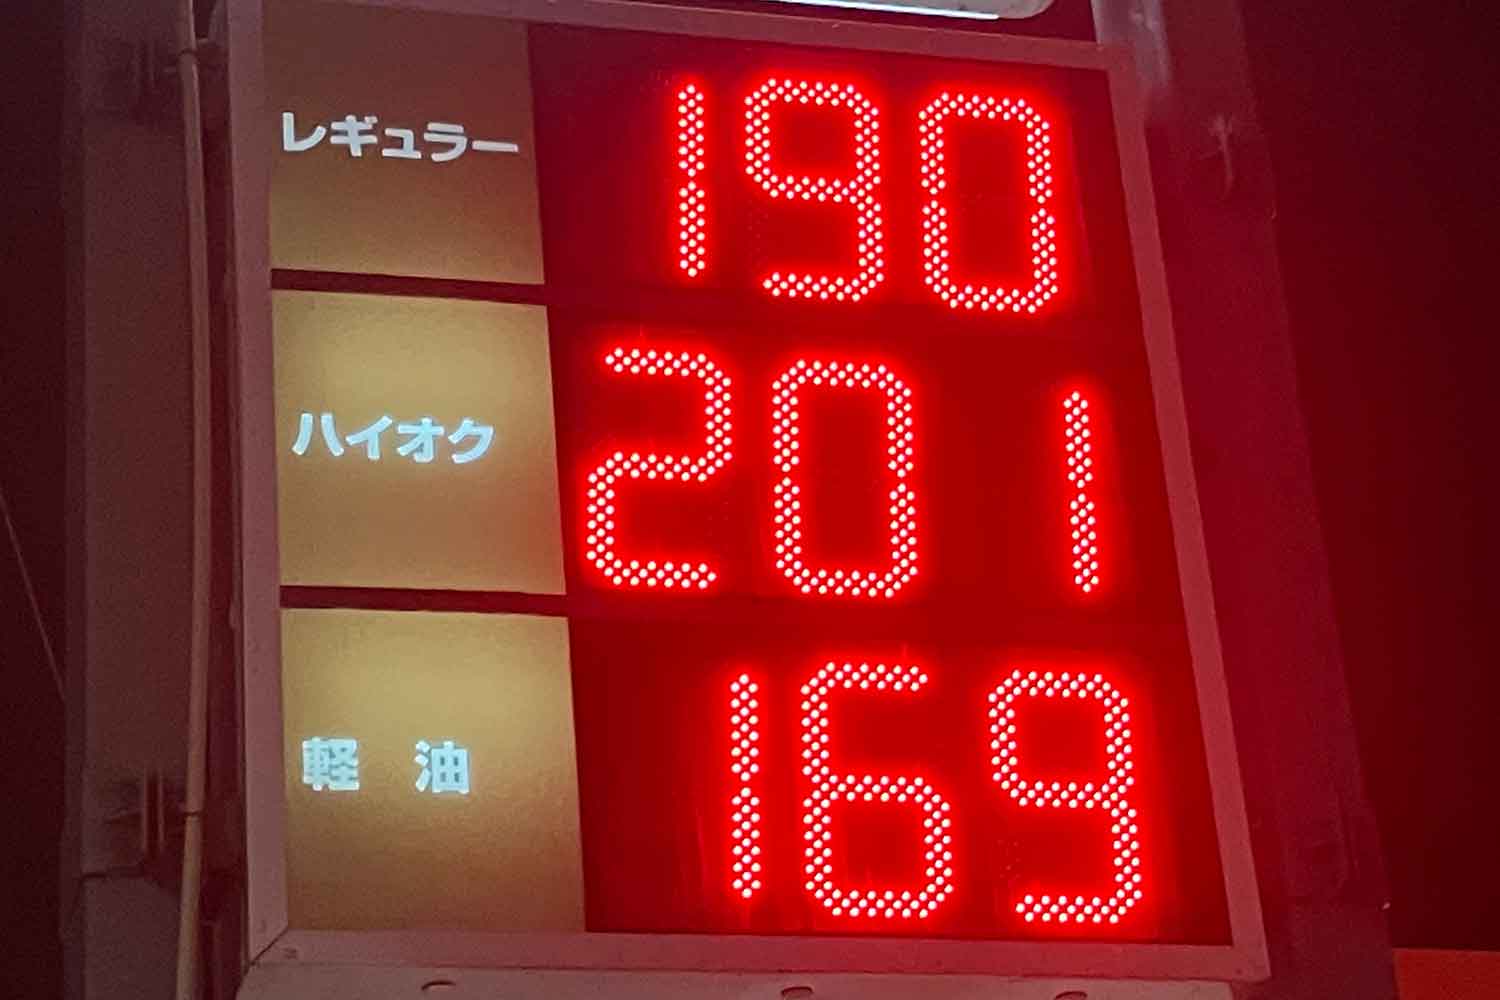 ガソリンスタンドの値段表示板 〜 画像2